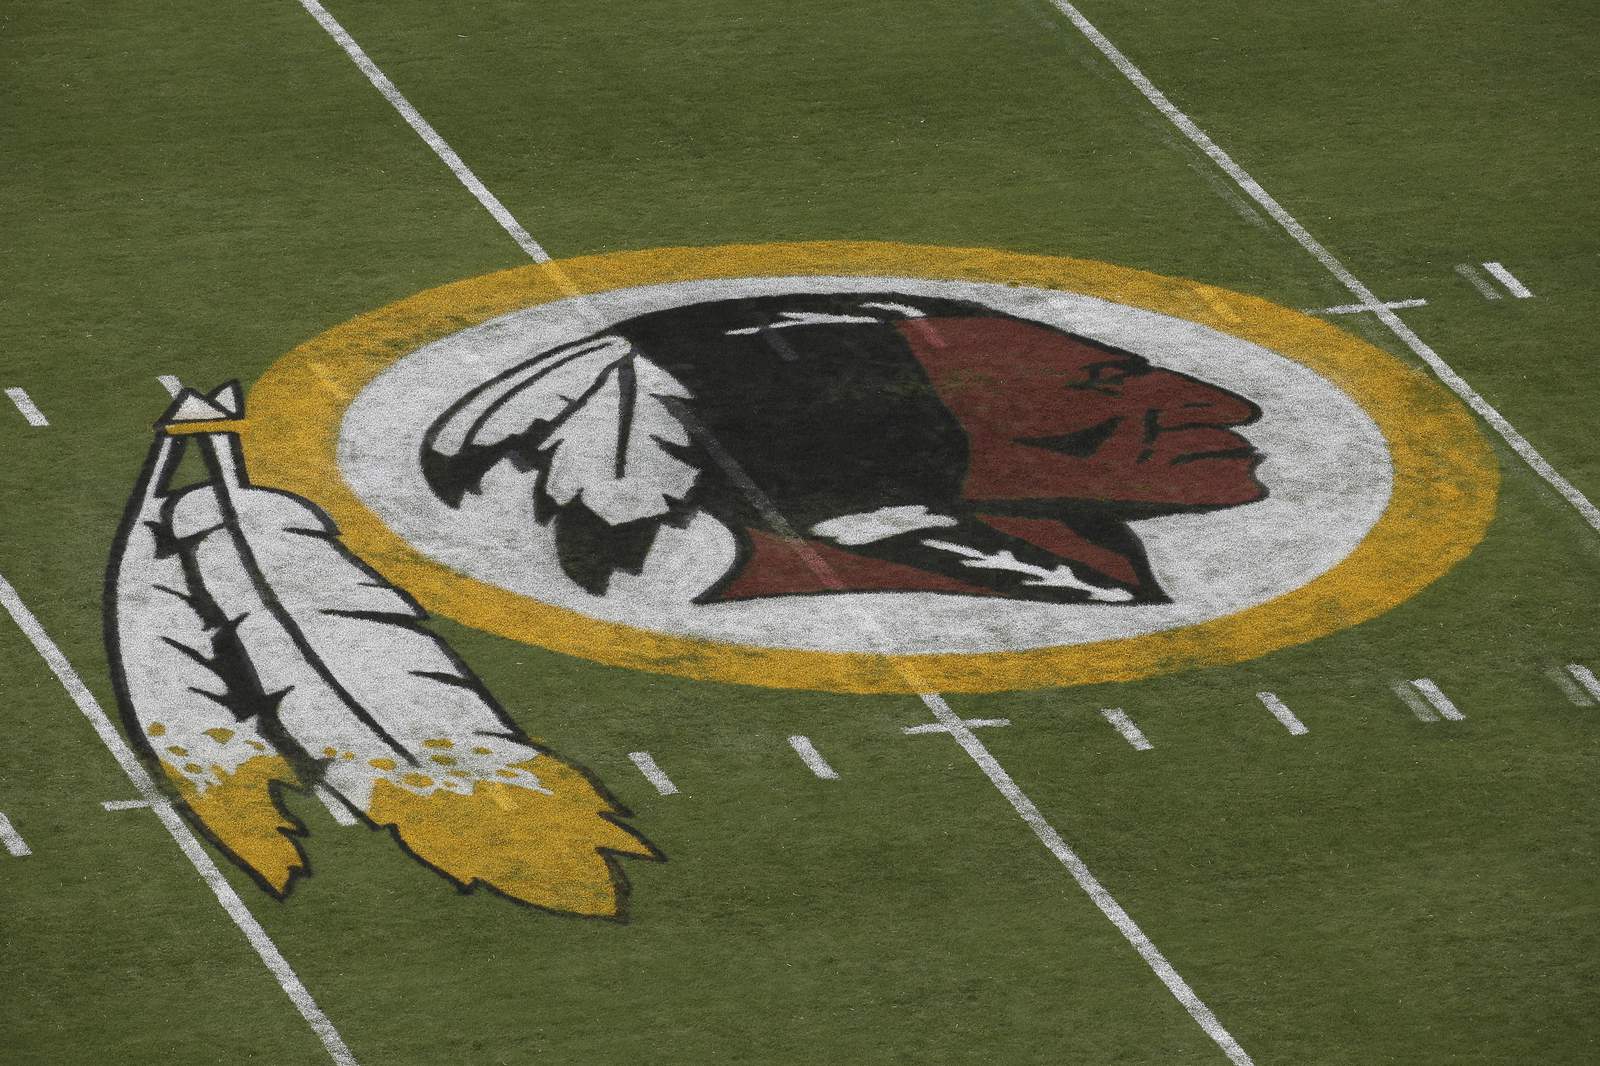 AP Source: Washington NFL team dropping 'Redskins' name